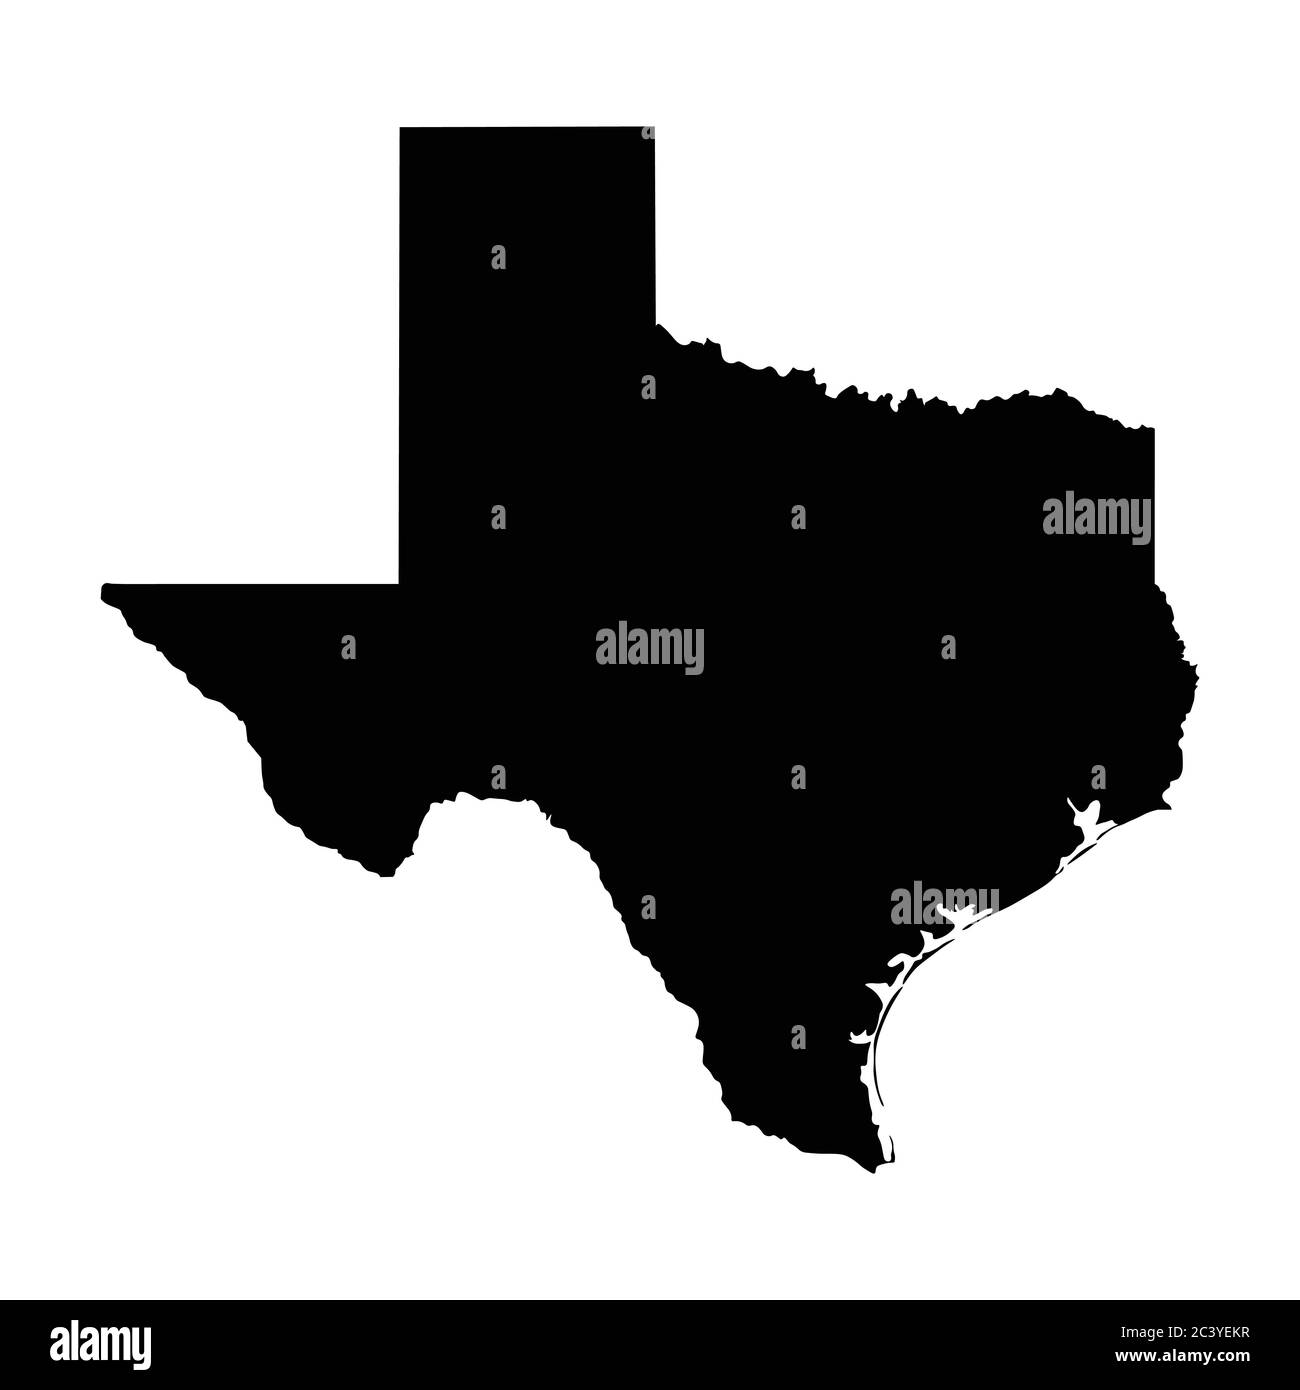 Texas TX State Map USA. Schwarze Silhouette solide Karte isolierte Karten auf weißem Hintergrund. EPS-Vektor Stock Vektor